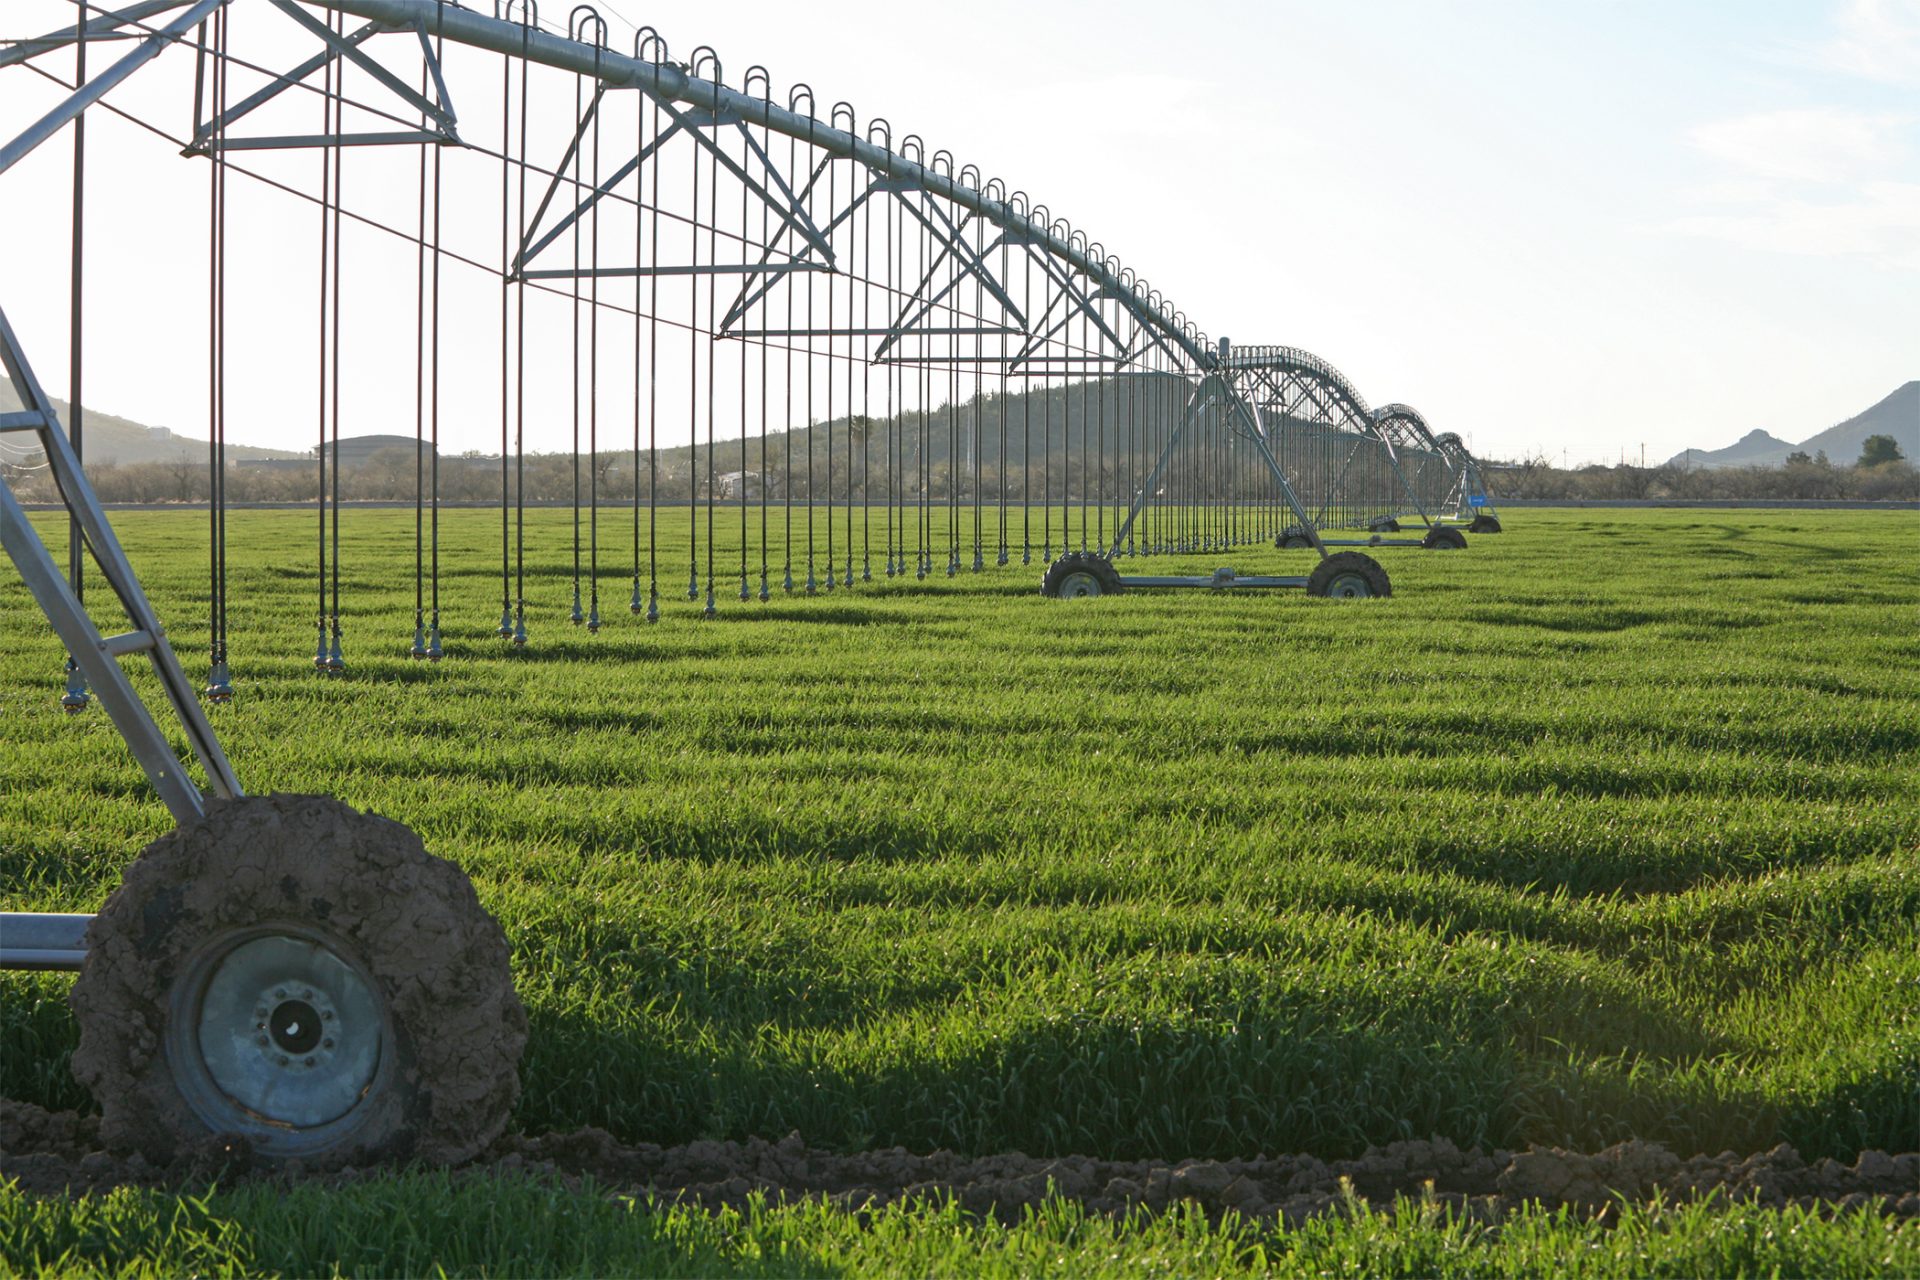 <p>フォンドモンテ・ファームズは親会社のアルマライが切実に必要とする水資源を確保するため、広大な土地を購入して地域一帯の水利権を獲得してきた歴史があるのだ。</p>